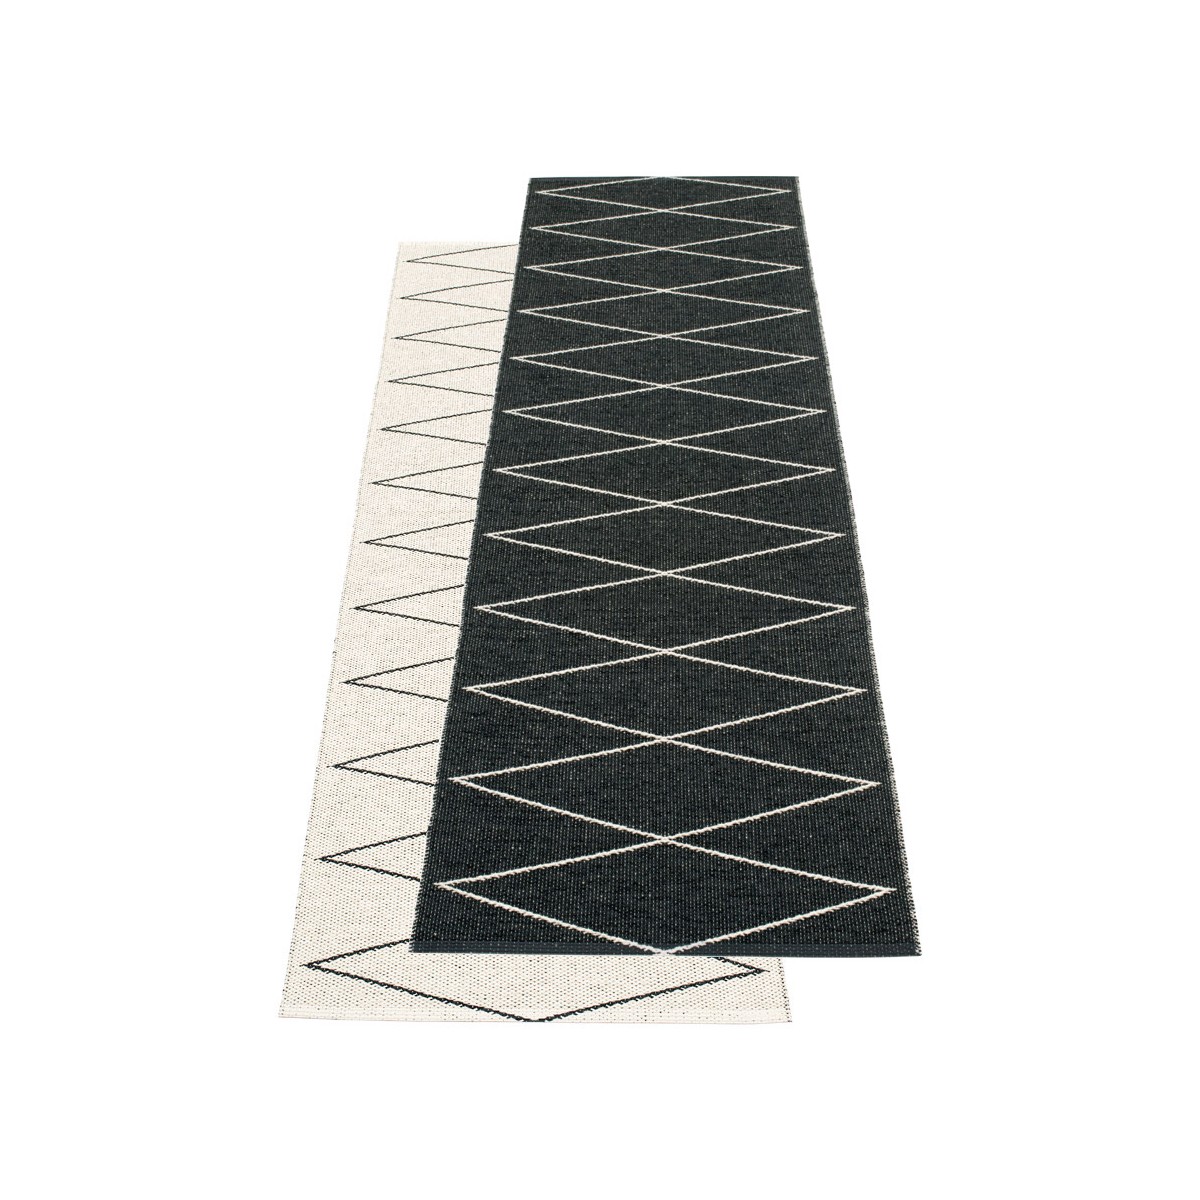 70x100 cm - Max rug